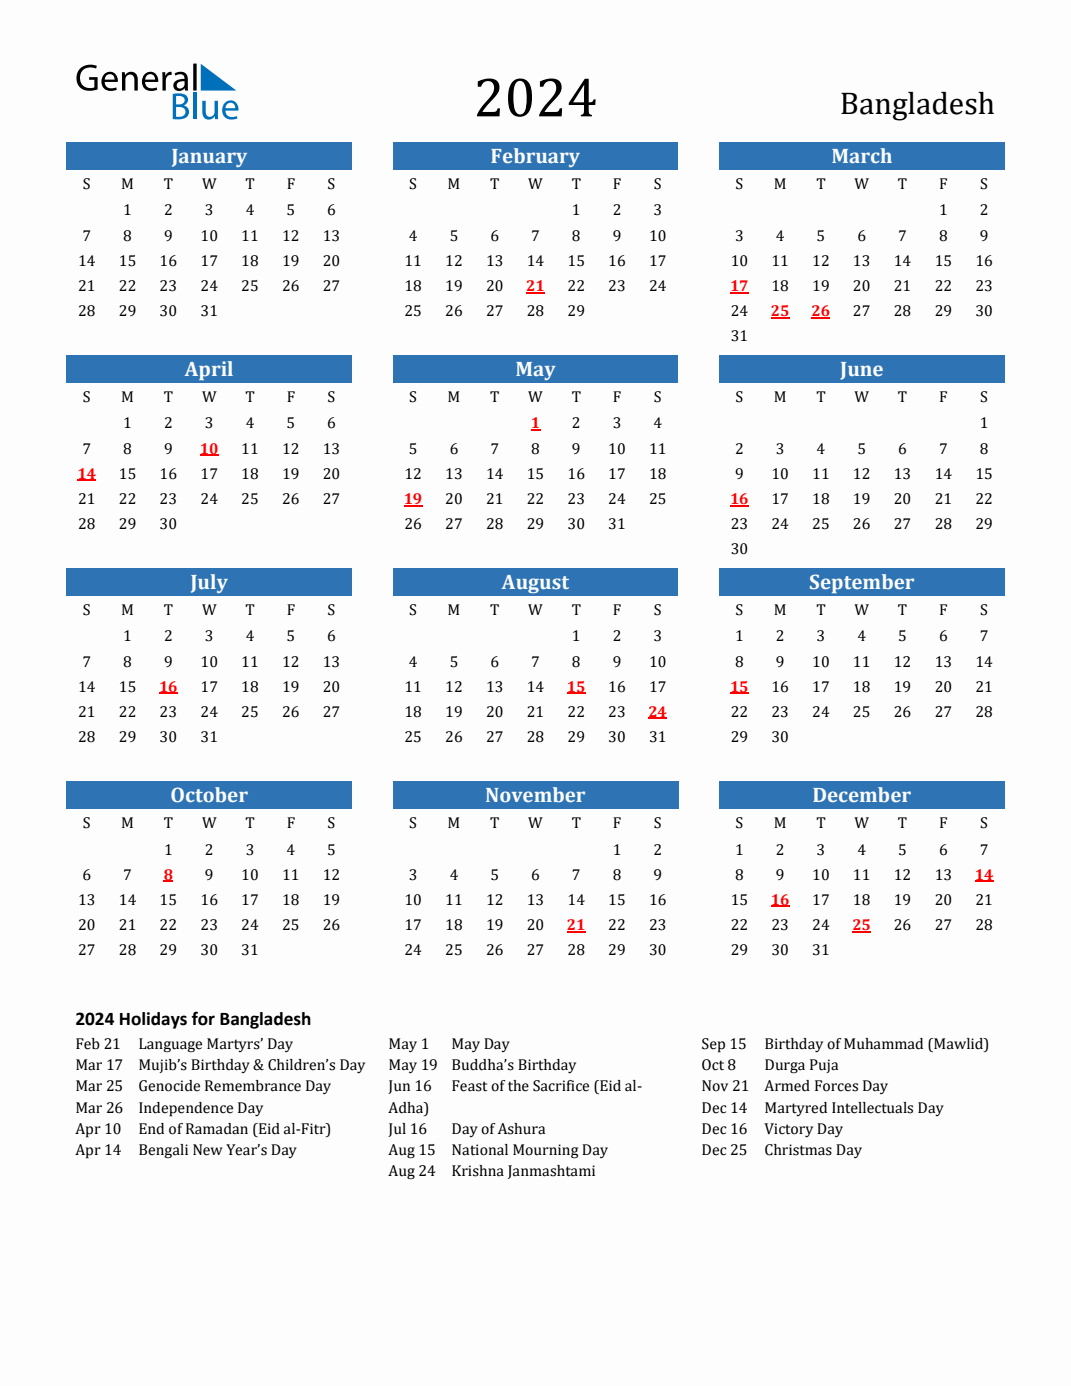 Bangladesh Holiday Calendar 2024 Hilde Laryssa - Free Printable 2024 Calendar With Holidays Bangladesh